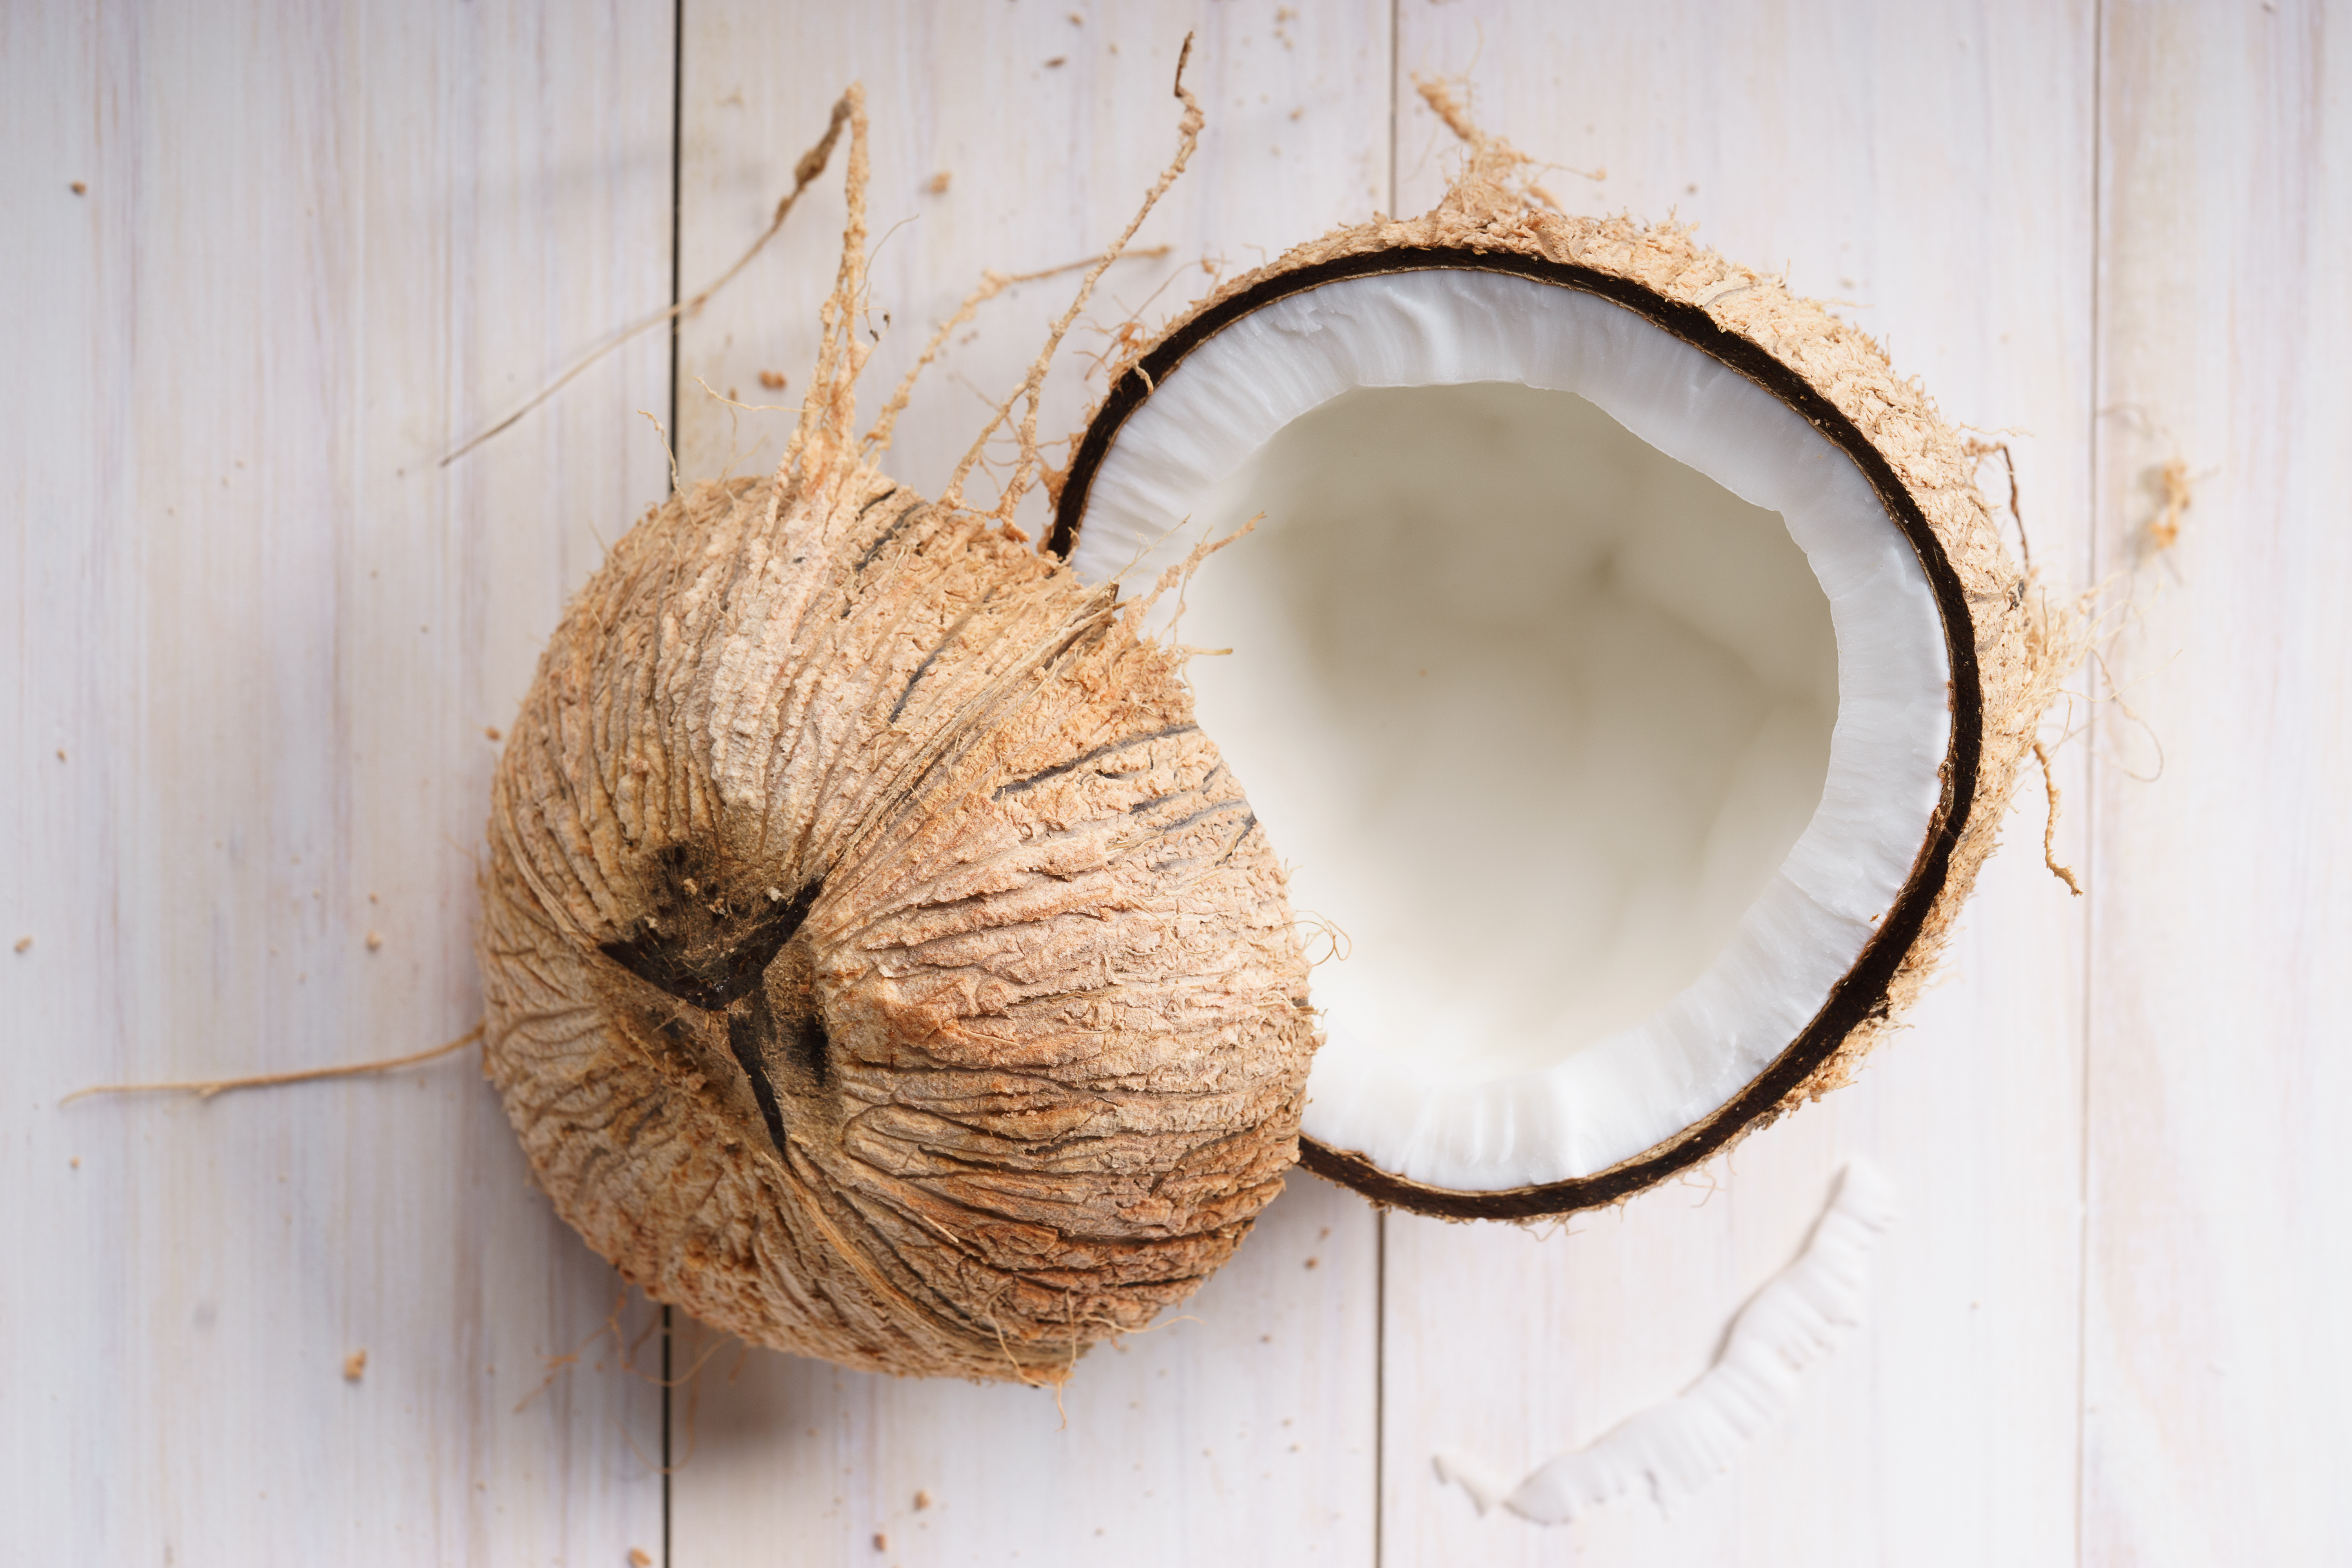 खाली पेट कच्चा नारियल खाइए, पाचन की शक्ति हो जाएगी बुलंद, इतना ही नहीं…-Eat raw coconut on an empty stomach, the power of digestion will increase, not only this…